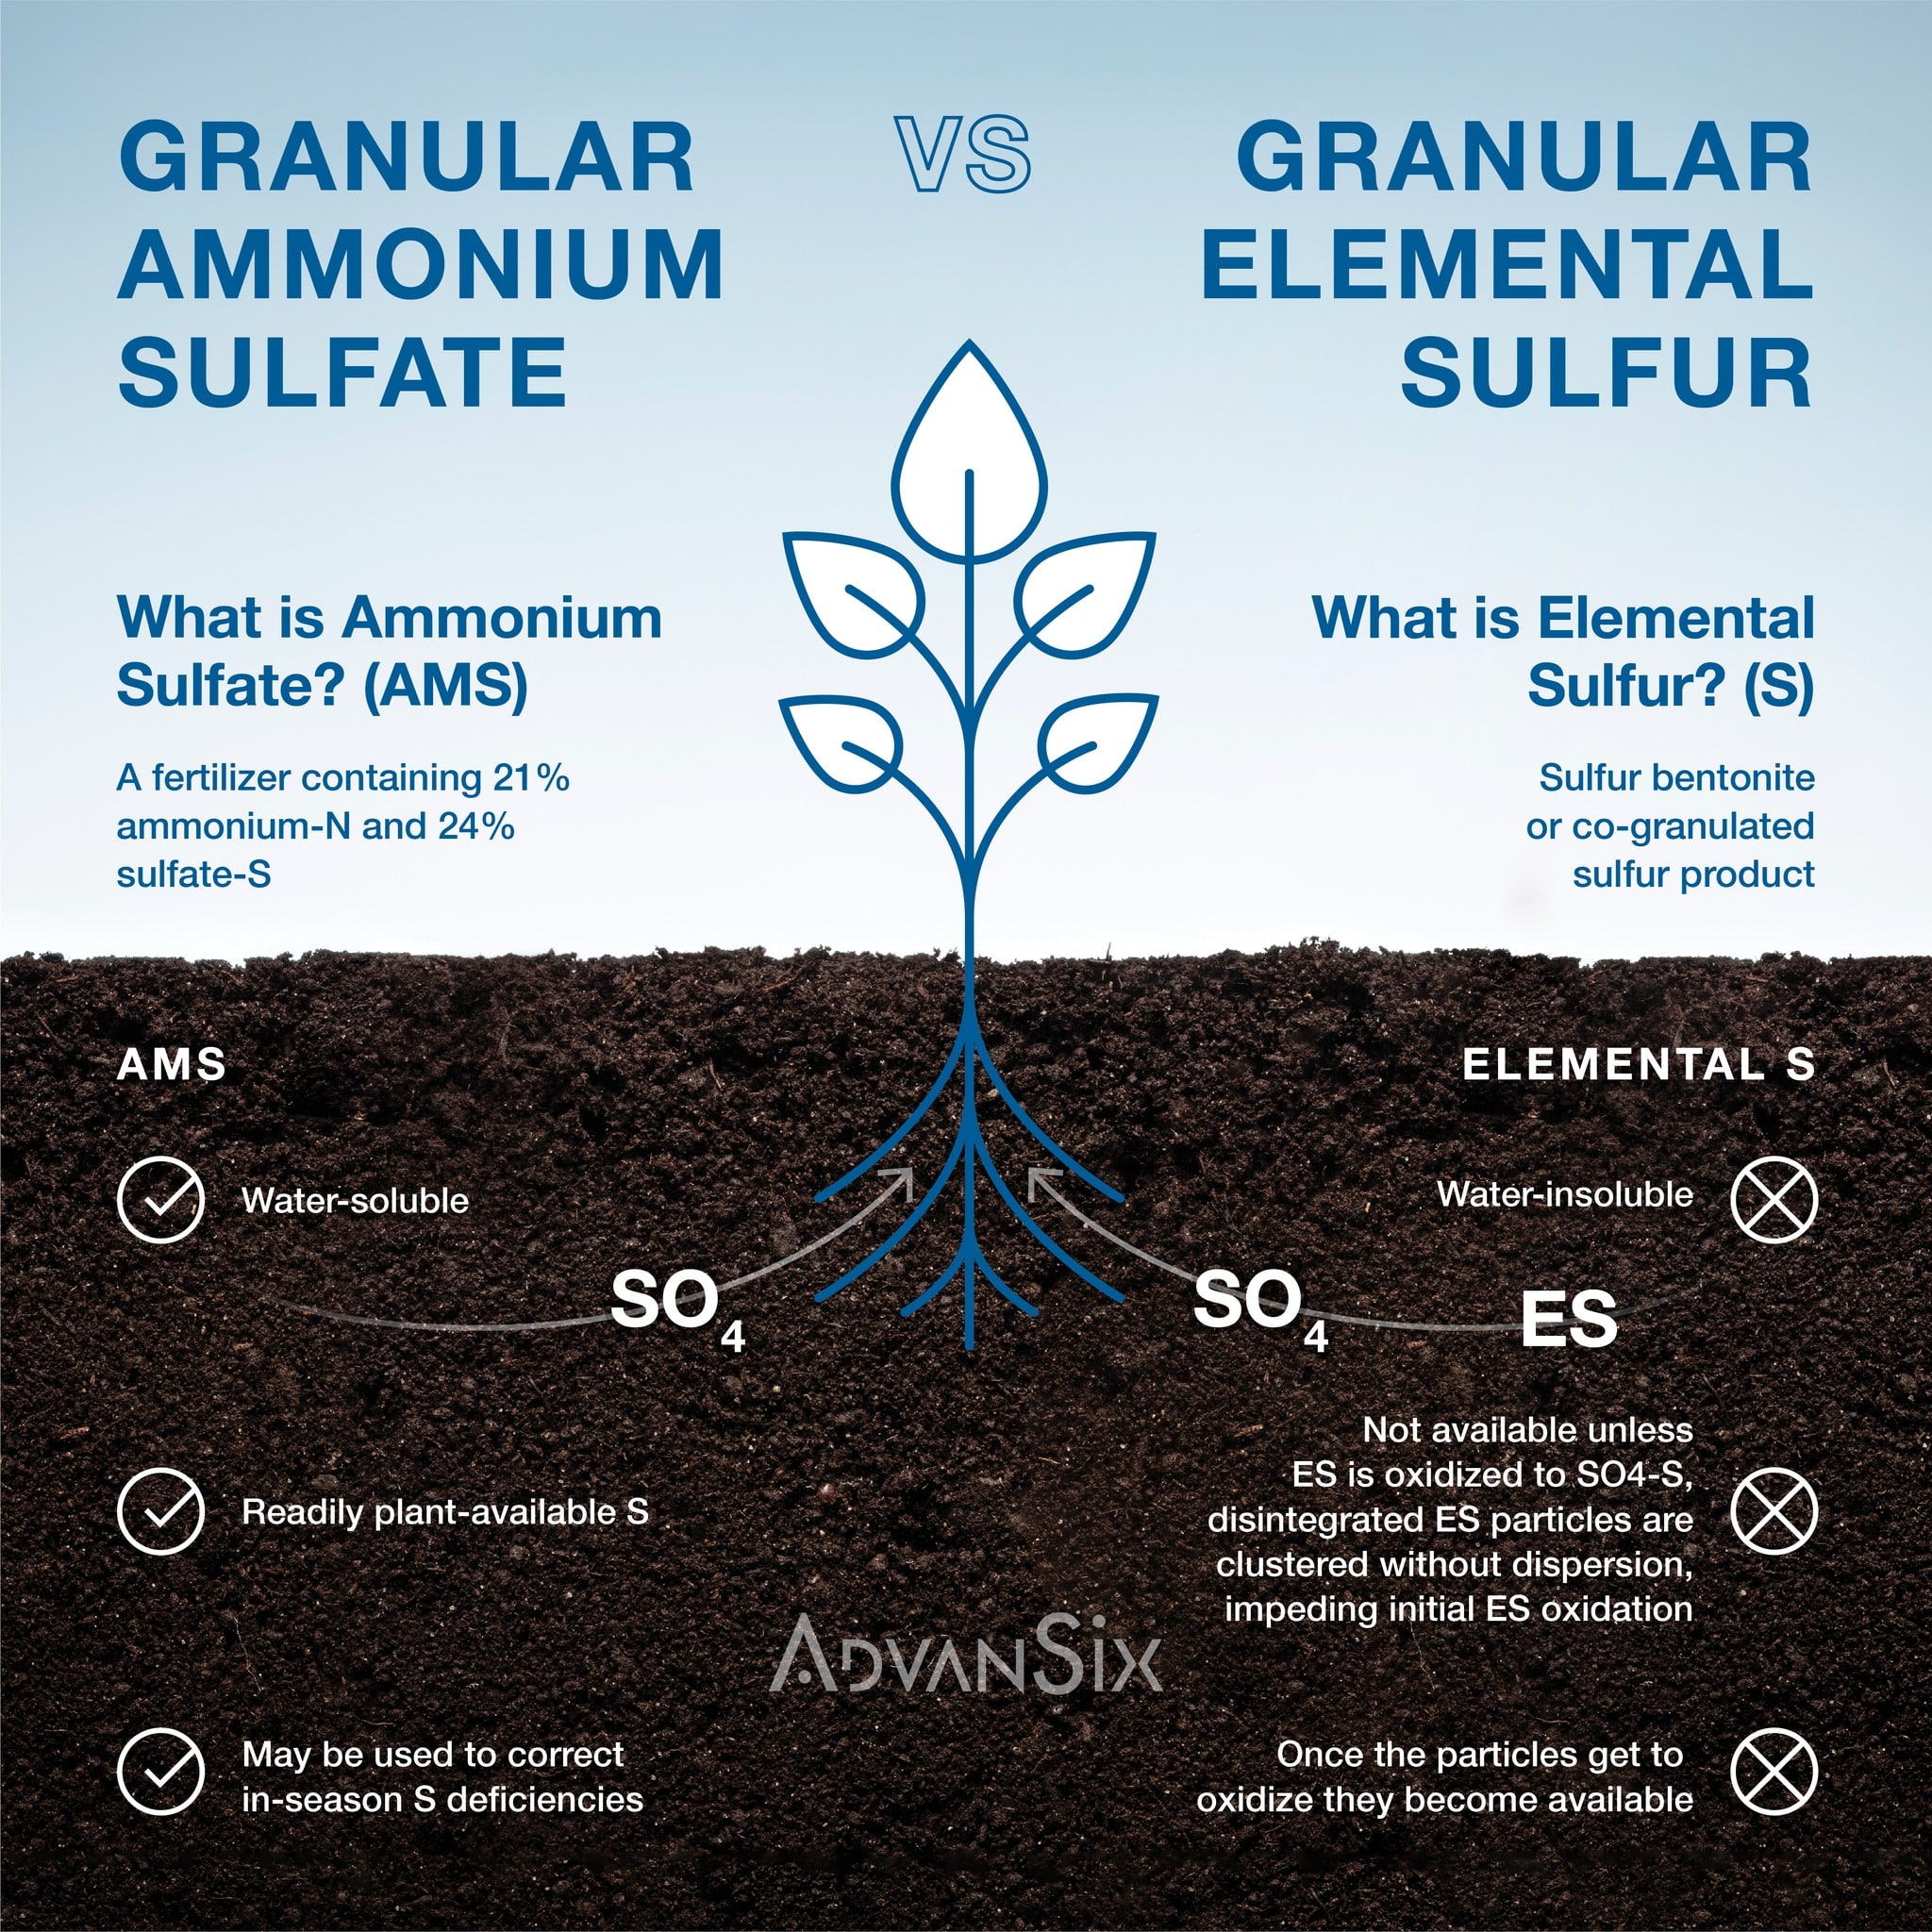 Granular Ammonium Sulfate vs. Granular Elemental Sulfur comparison